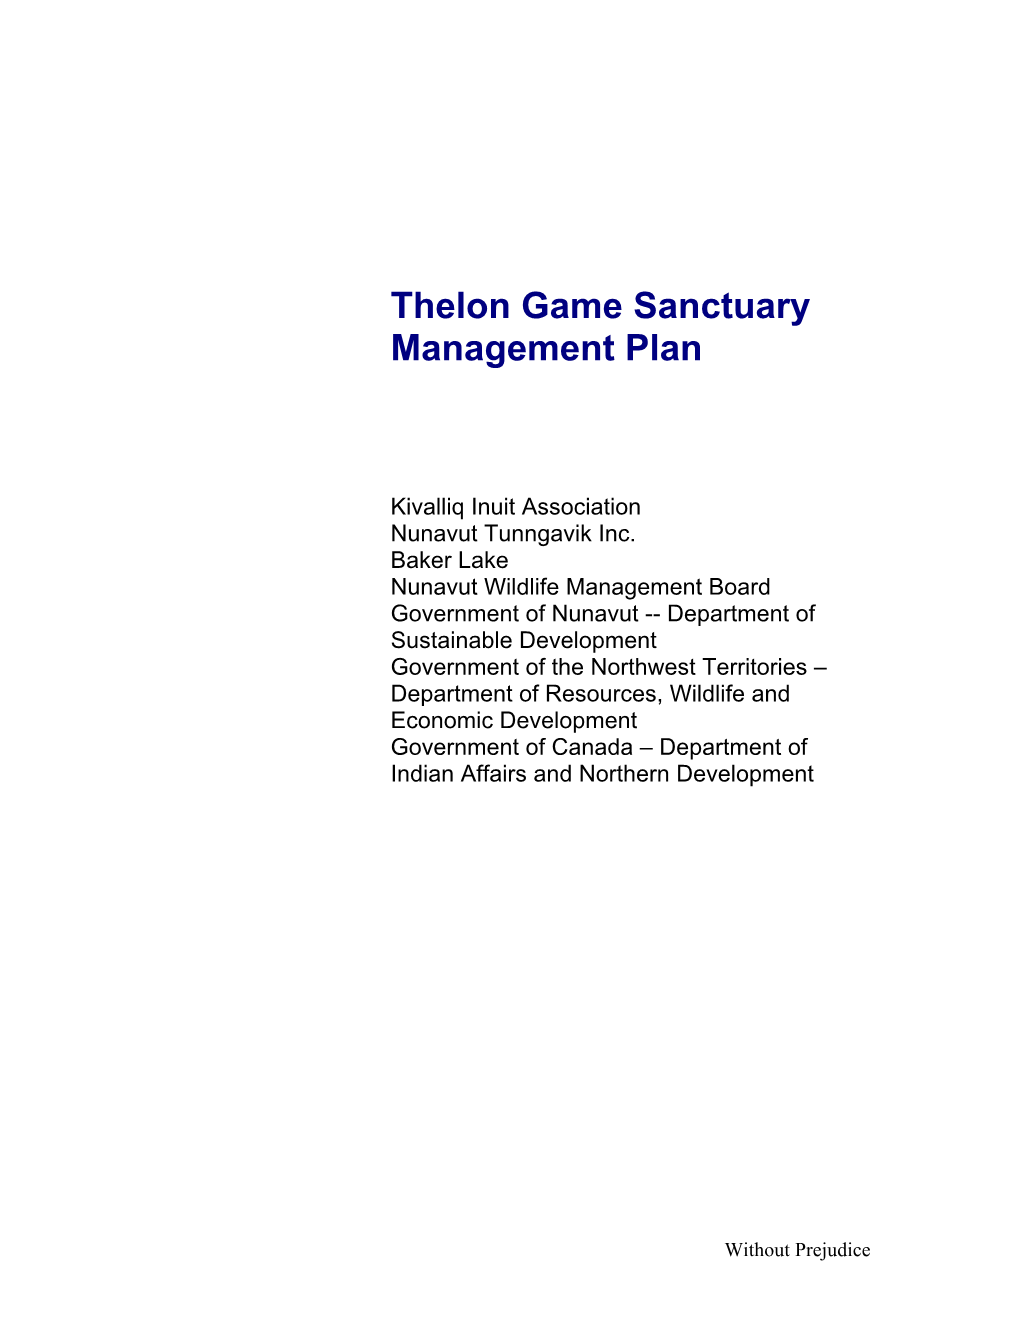 Thelon Game Sanctuary Management Plan